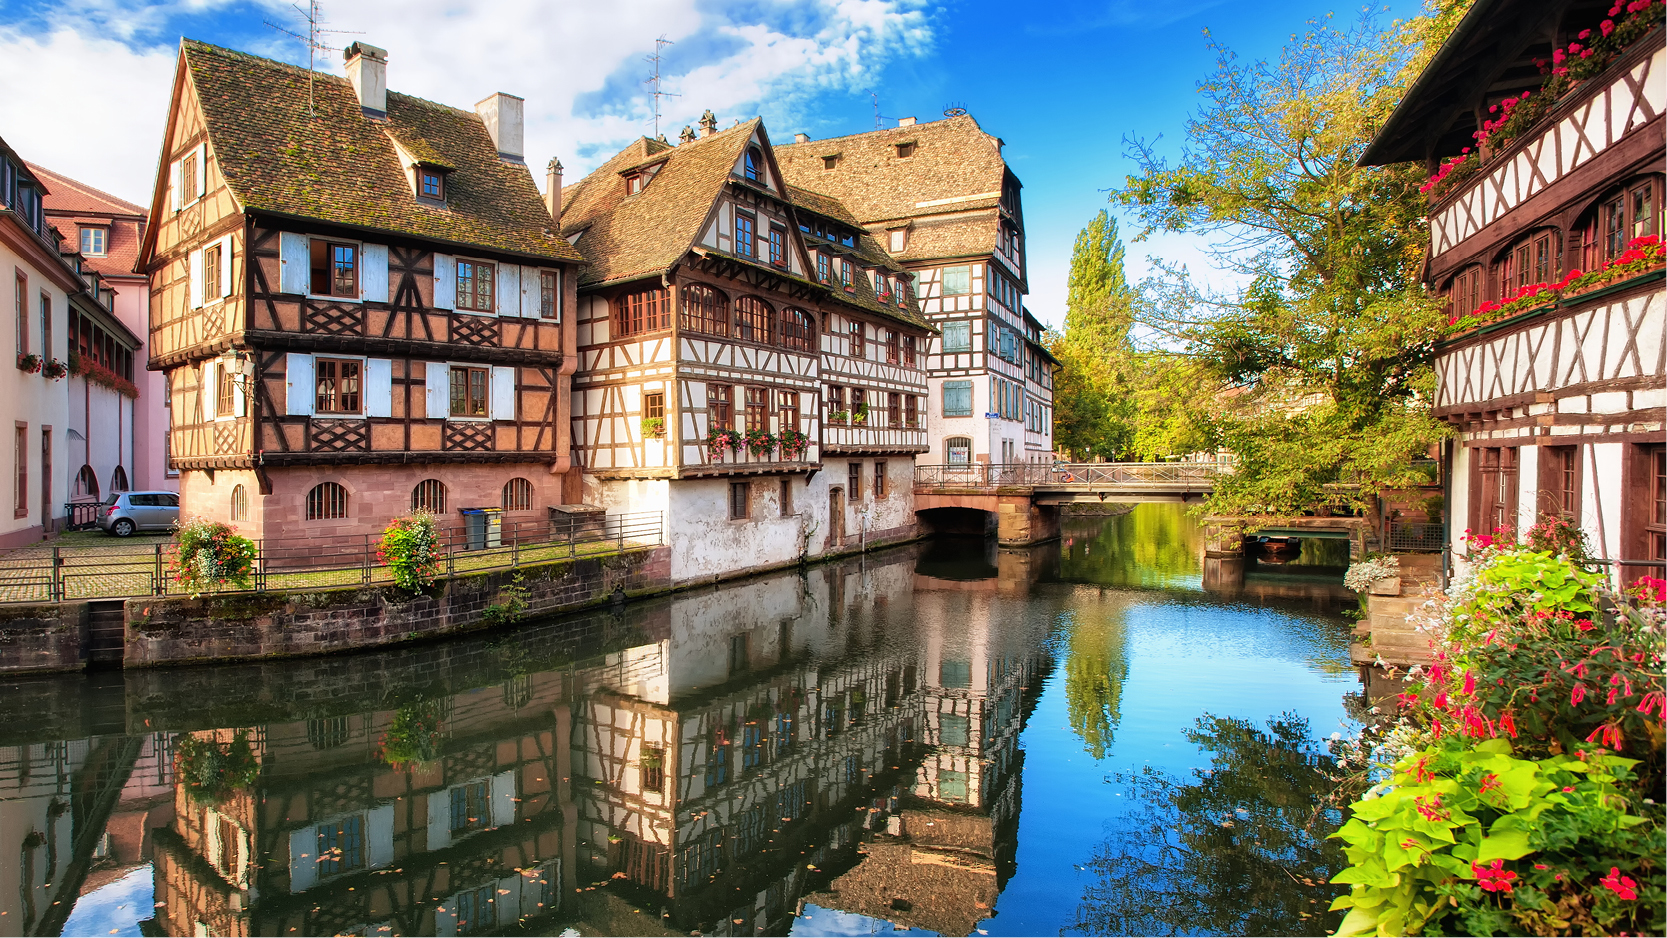 Idylliska Strasbourg i Frankrike med korsvirkeshus, kullerstensgator och kanalen.